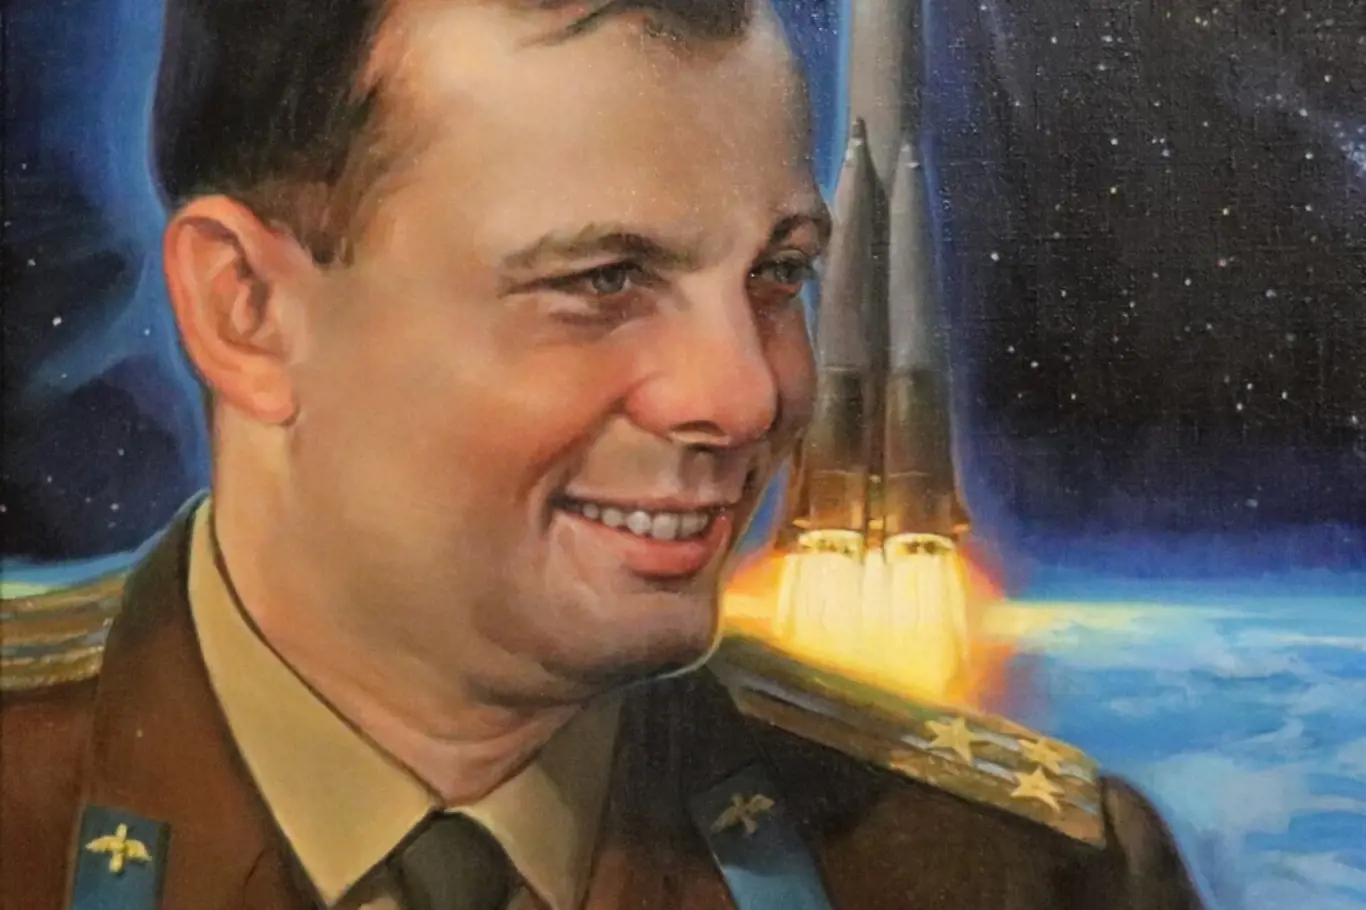 Zatímco Gagarin při svém vesmírném letu zvládl přetížení 4 G a jeho puls z 64 vzrostl na 150 tepů za minutu, to, co následovalo, už tak dobře neustál.